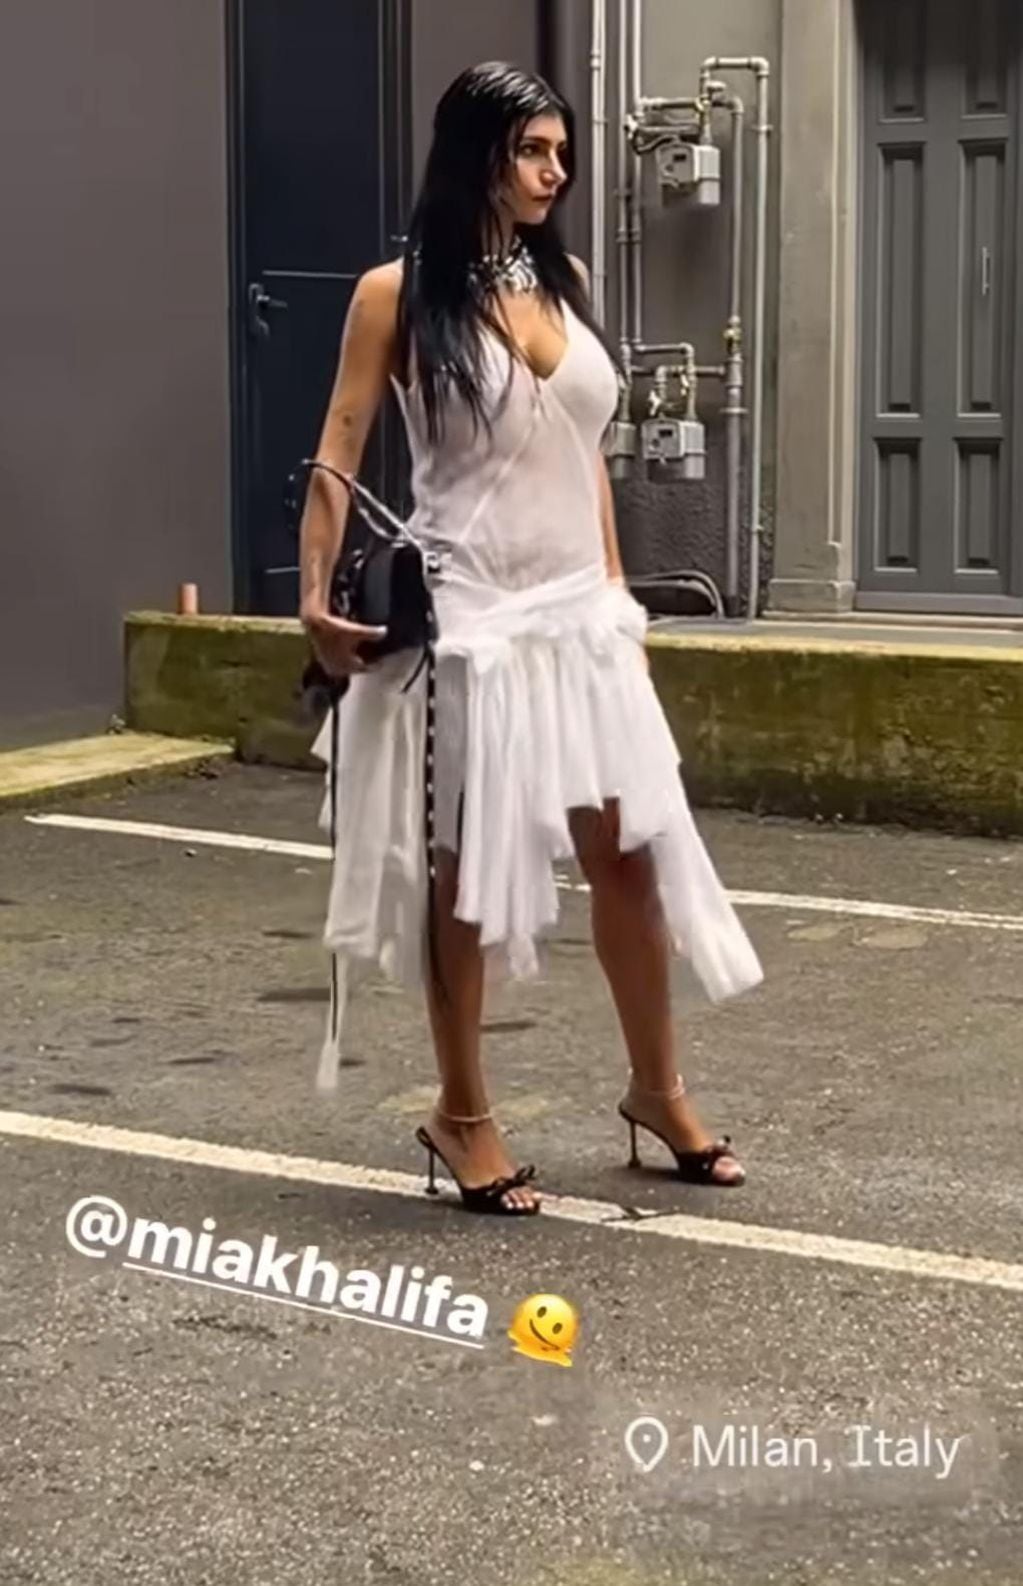 Mia Khalifa mostró de más con un mega escote y encendió Instagram